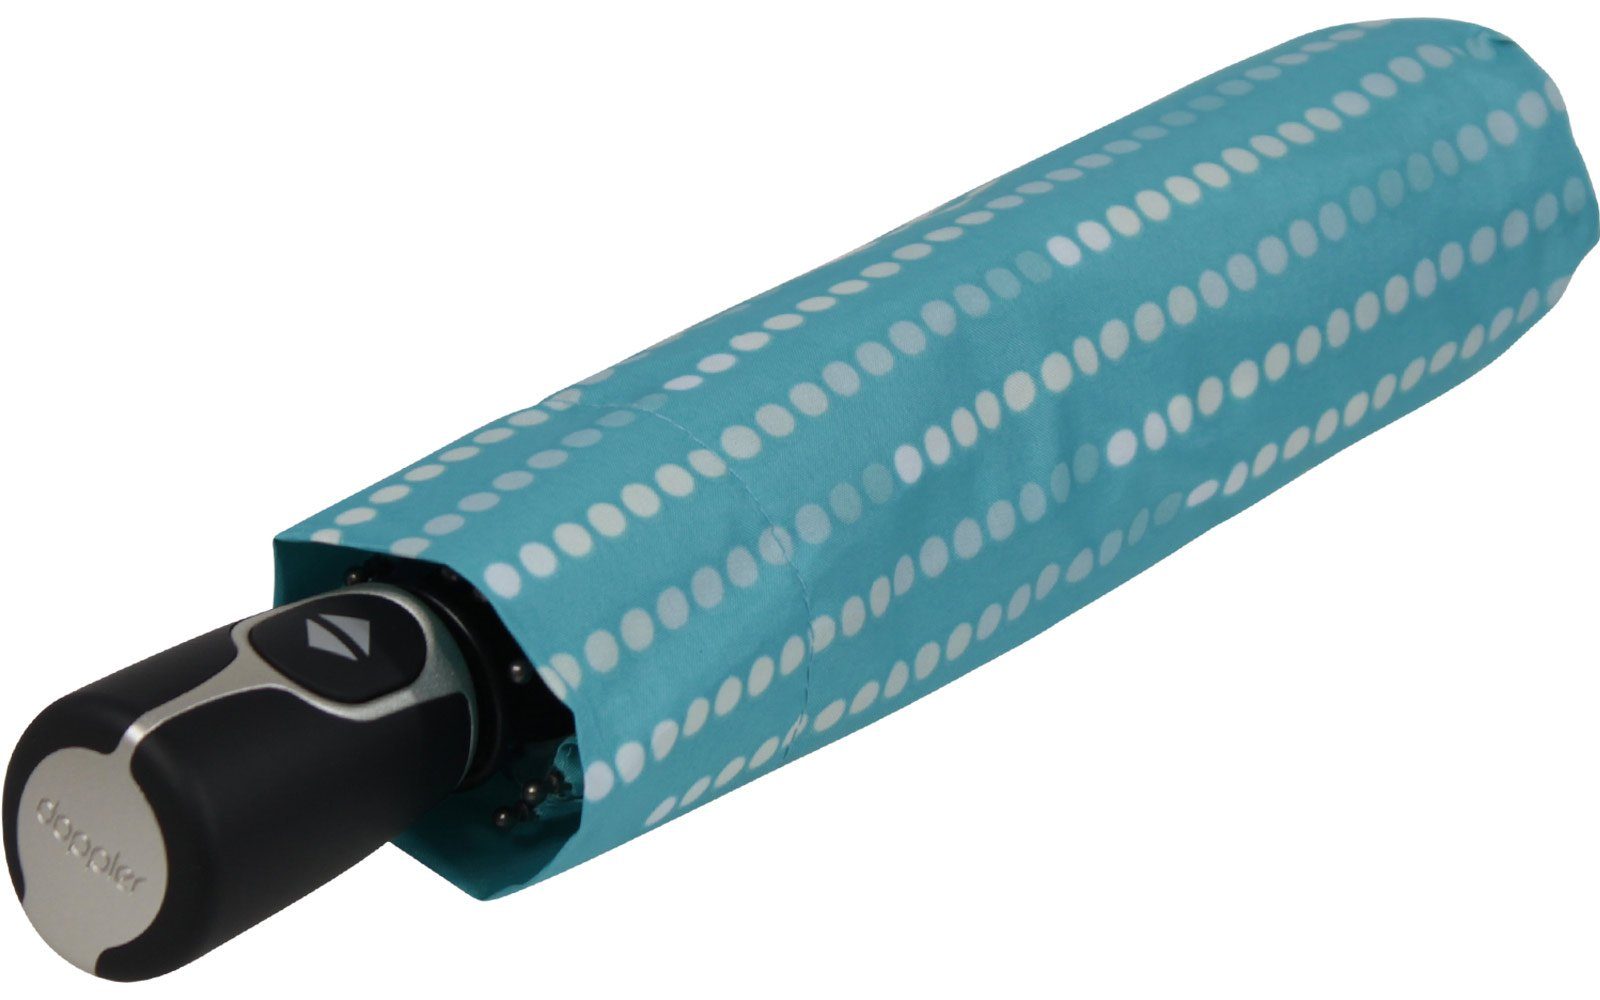 Sonnenschirm Magic doppler® und Damen - nutzbar elegant, Fiber stabil Taschenregenschirm als UV-Schutz Glamour, blau Auf-Zu